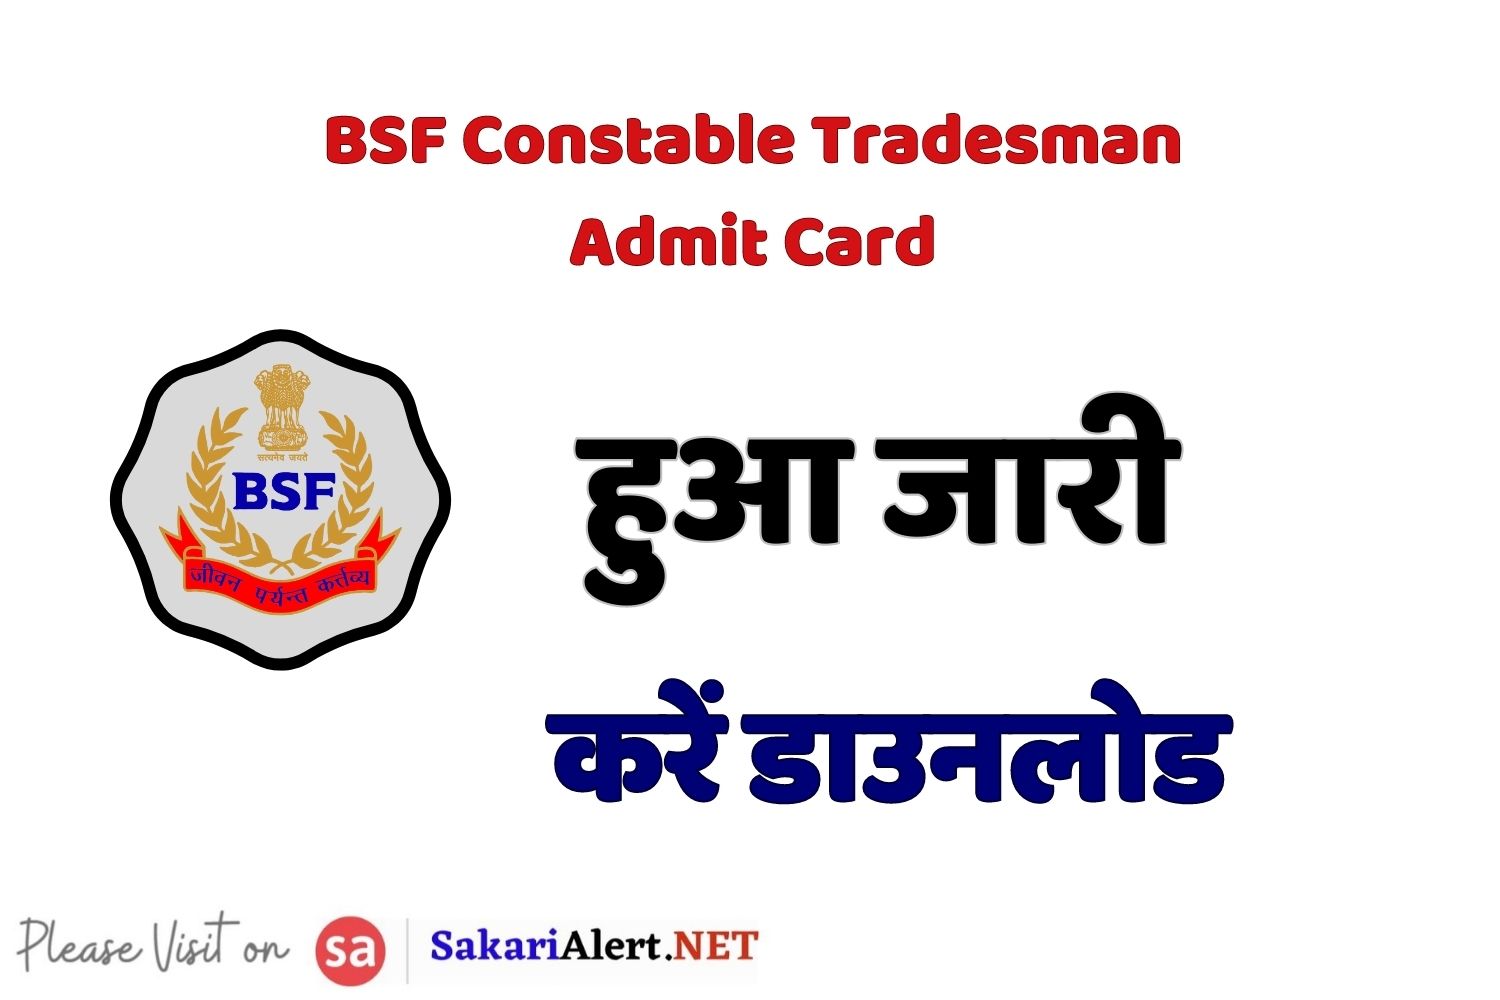 BSF Constable Tradesman Admit Card | सीमा सुरक्षा बल कांस्टेबल ट्रेड्समैन परीक्षा एडमिट कार्ड